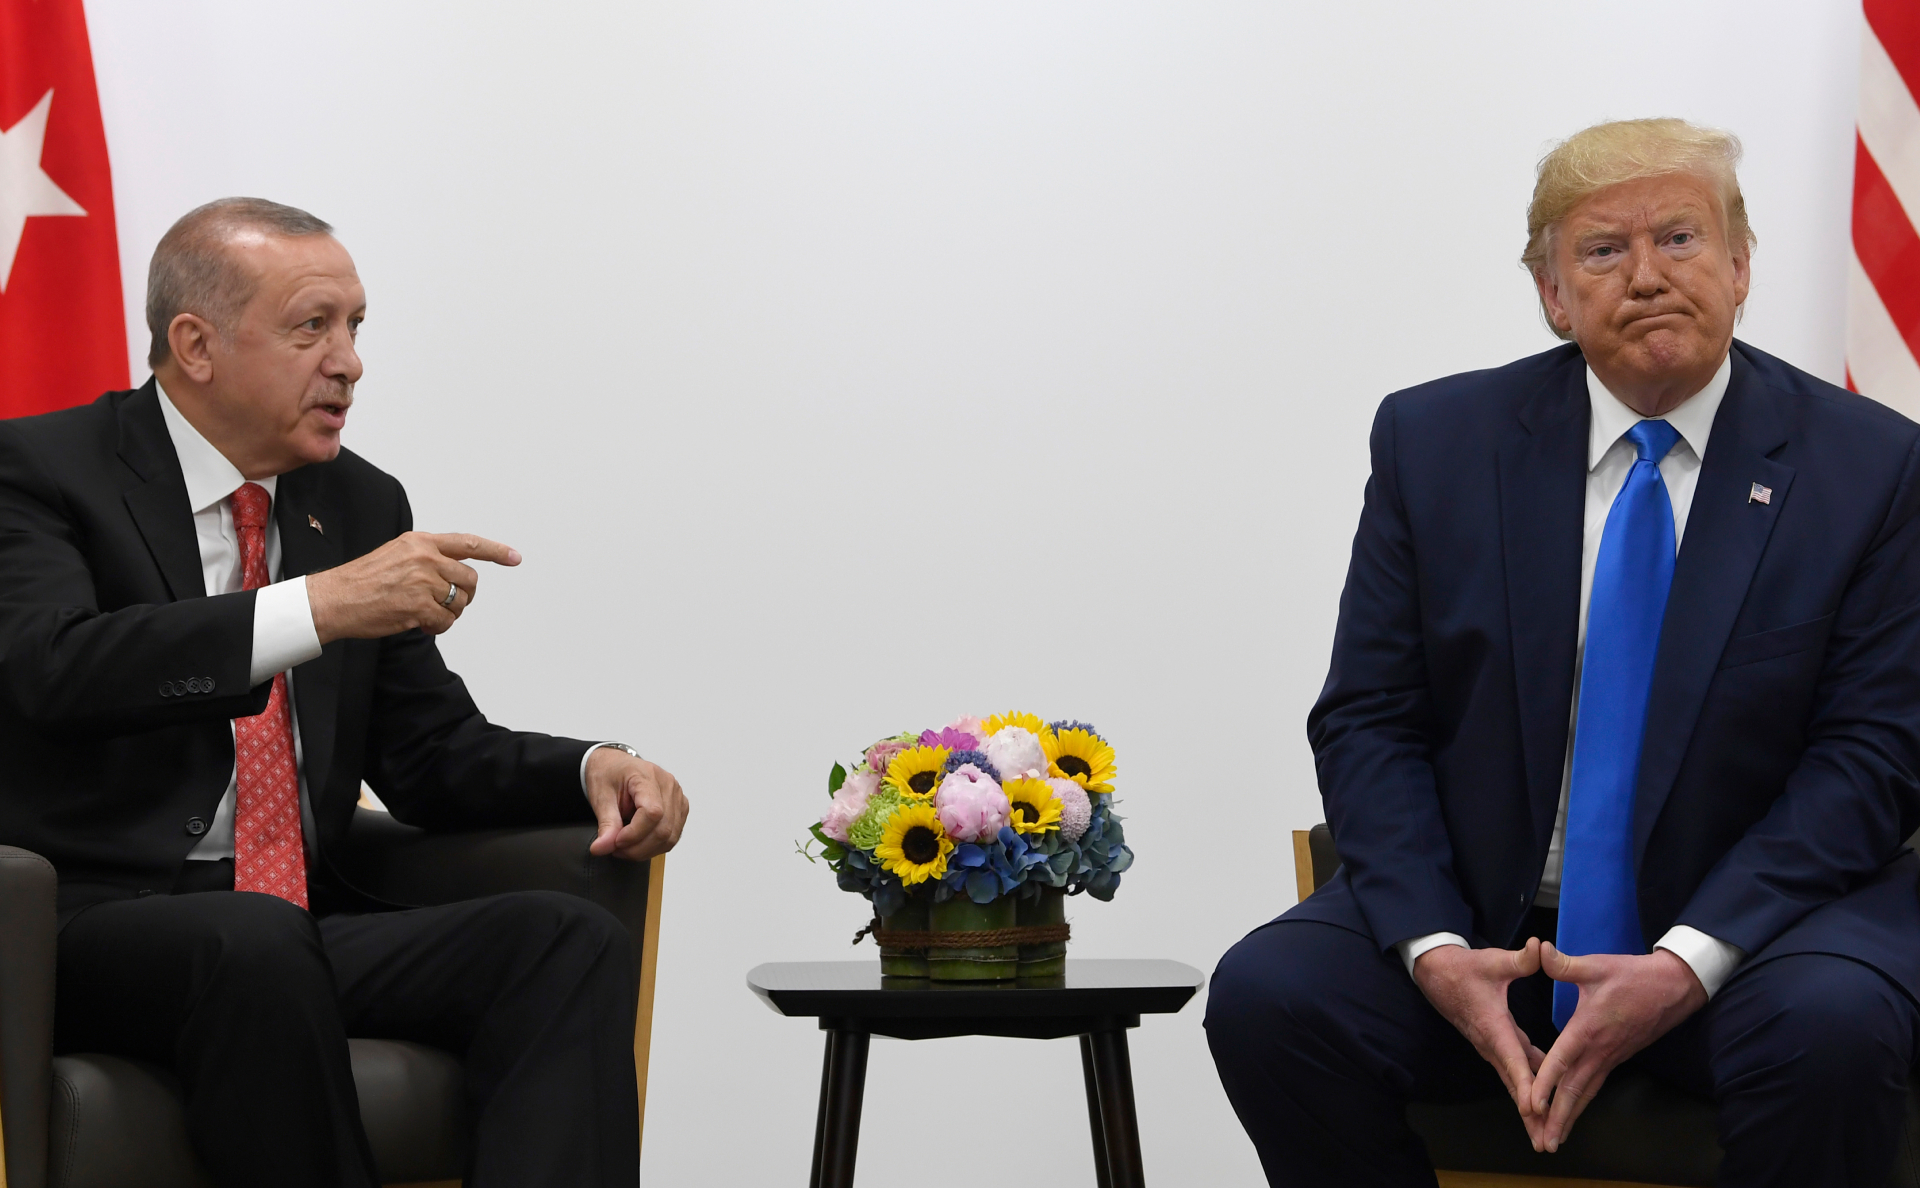 Реджеп Тайип Эрдоган (слева) и Дональд Трамп